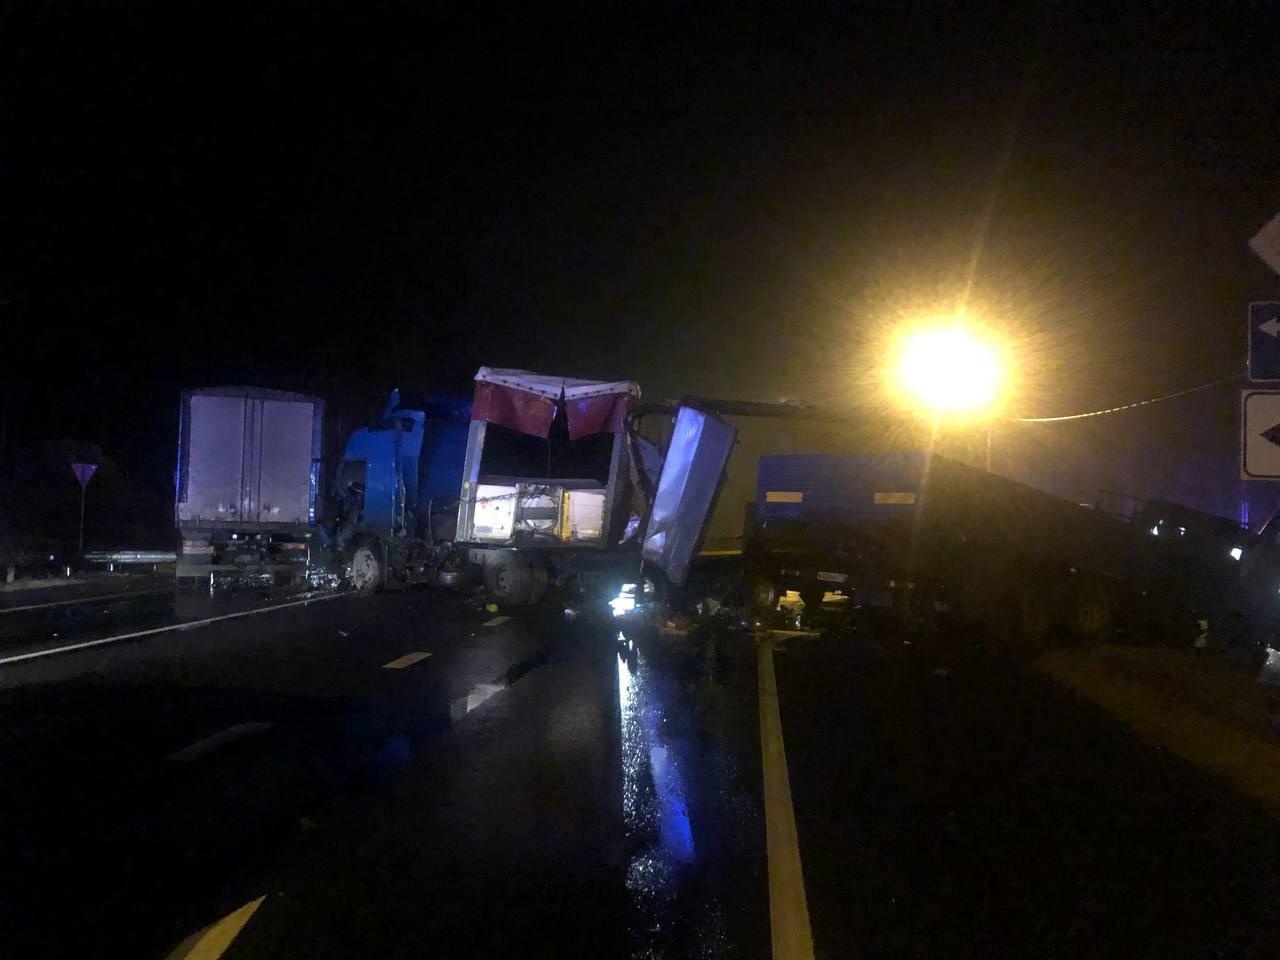 В ГИБДД рассказали подробности массовой аварии с четырьмя грузовиками на М10 под Вышним Волочком - новости Афанасий